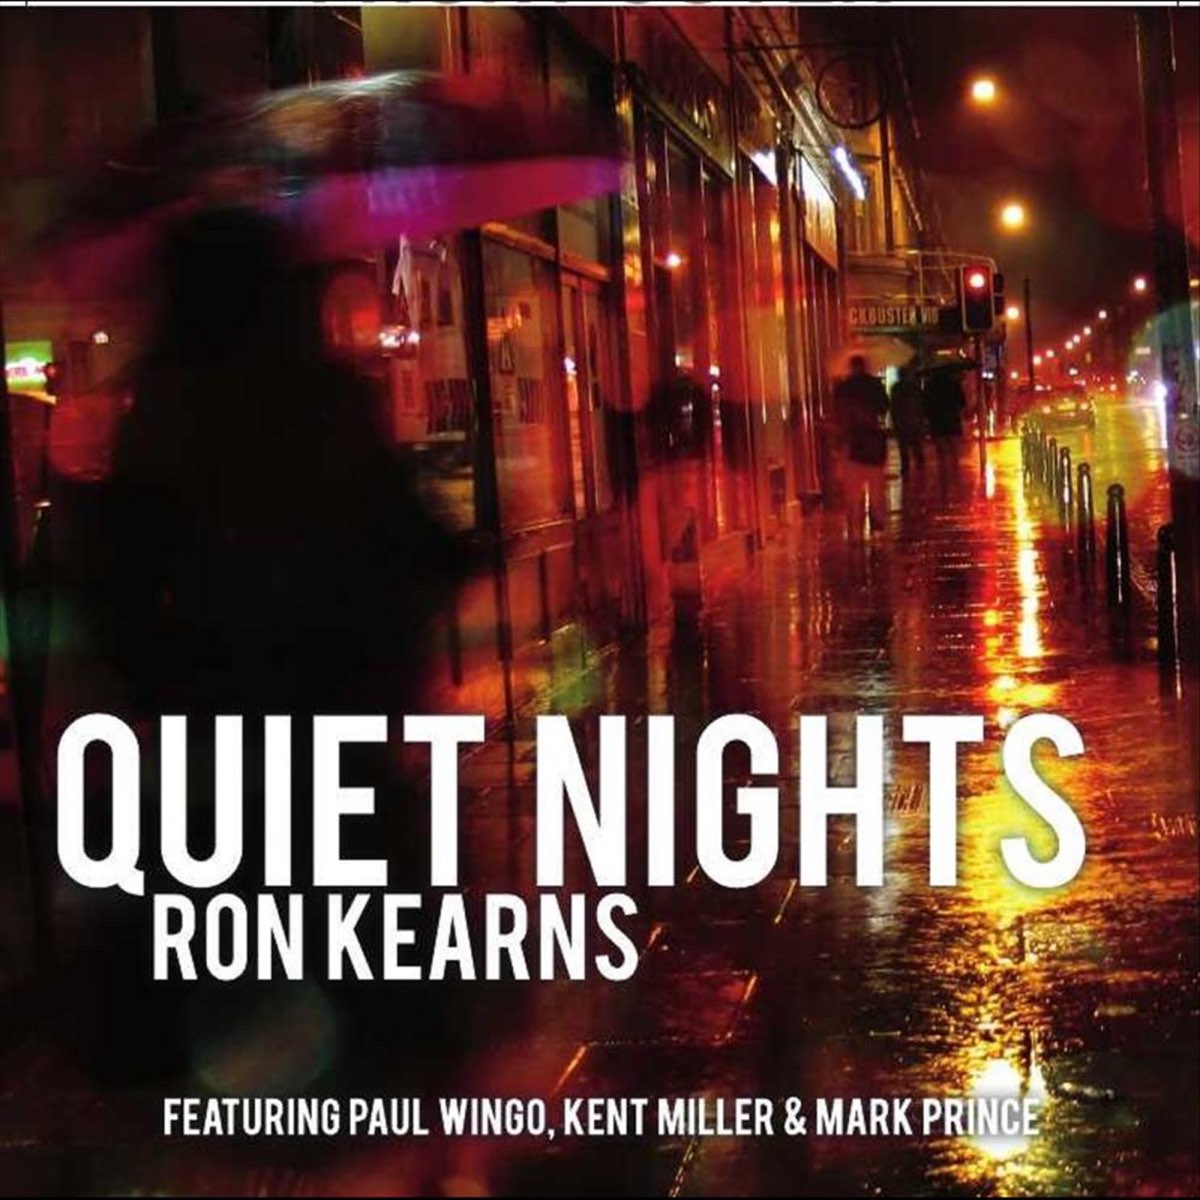 Quiet night. Kent Miller. Diana Krall quiet Nights. J. Kent Miller.